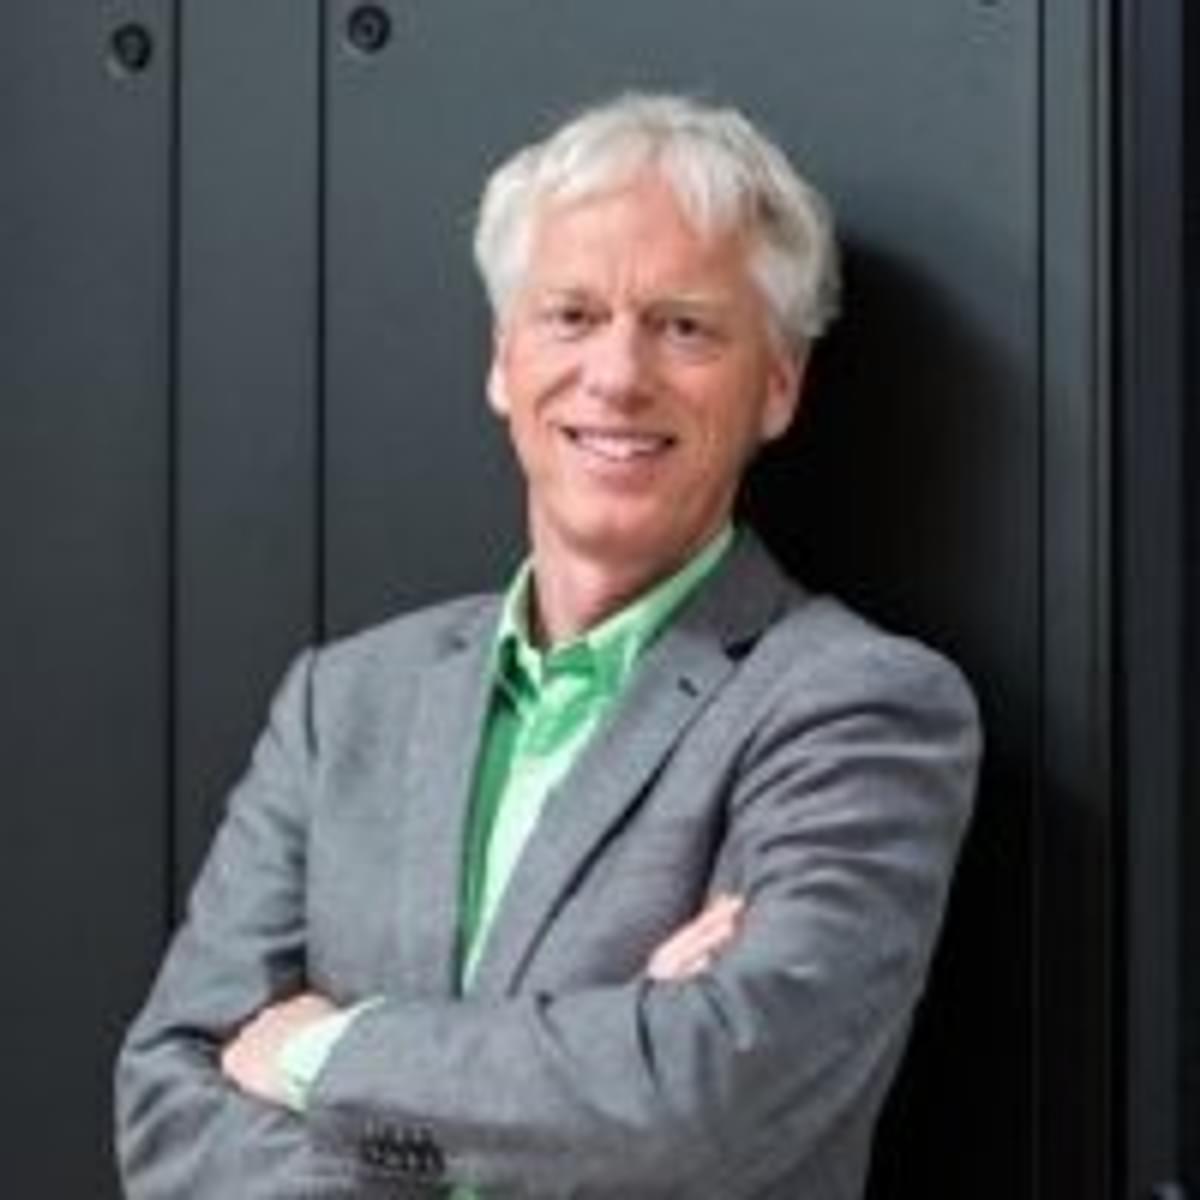 Jan-Willem van der Meere benoemd tot voorzitter van SAP-gebruikersvereniging VNSG image